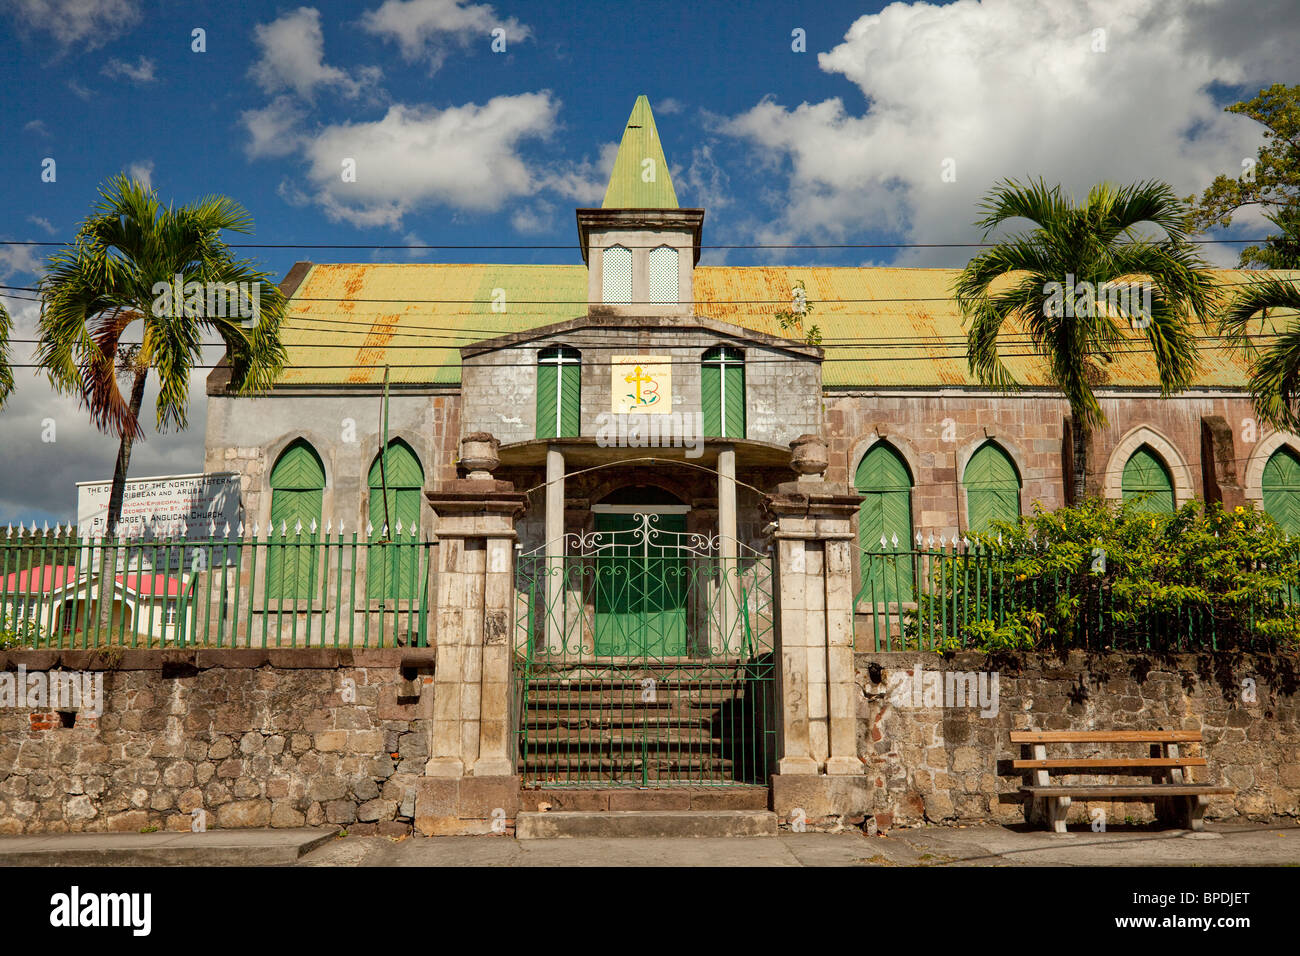 A church in Roseau, Dominica, West Indies. Stock Photo